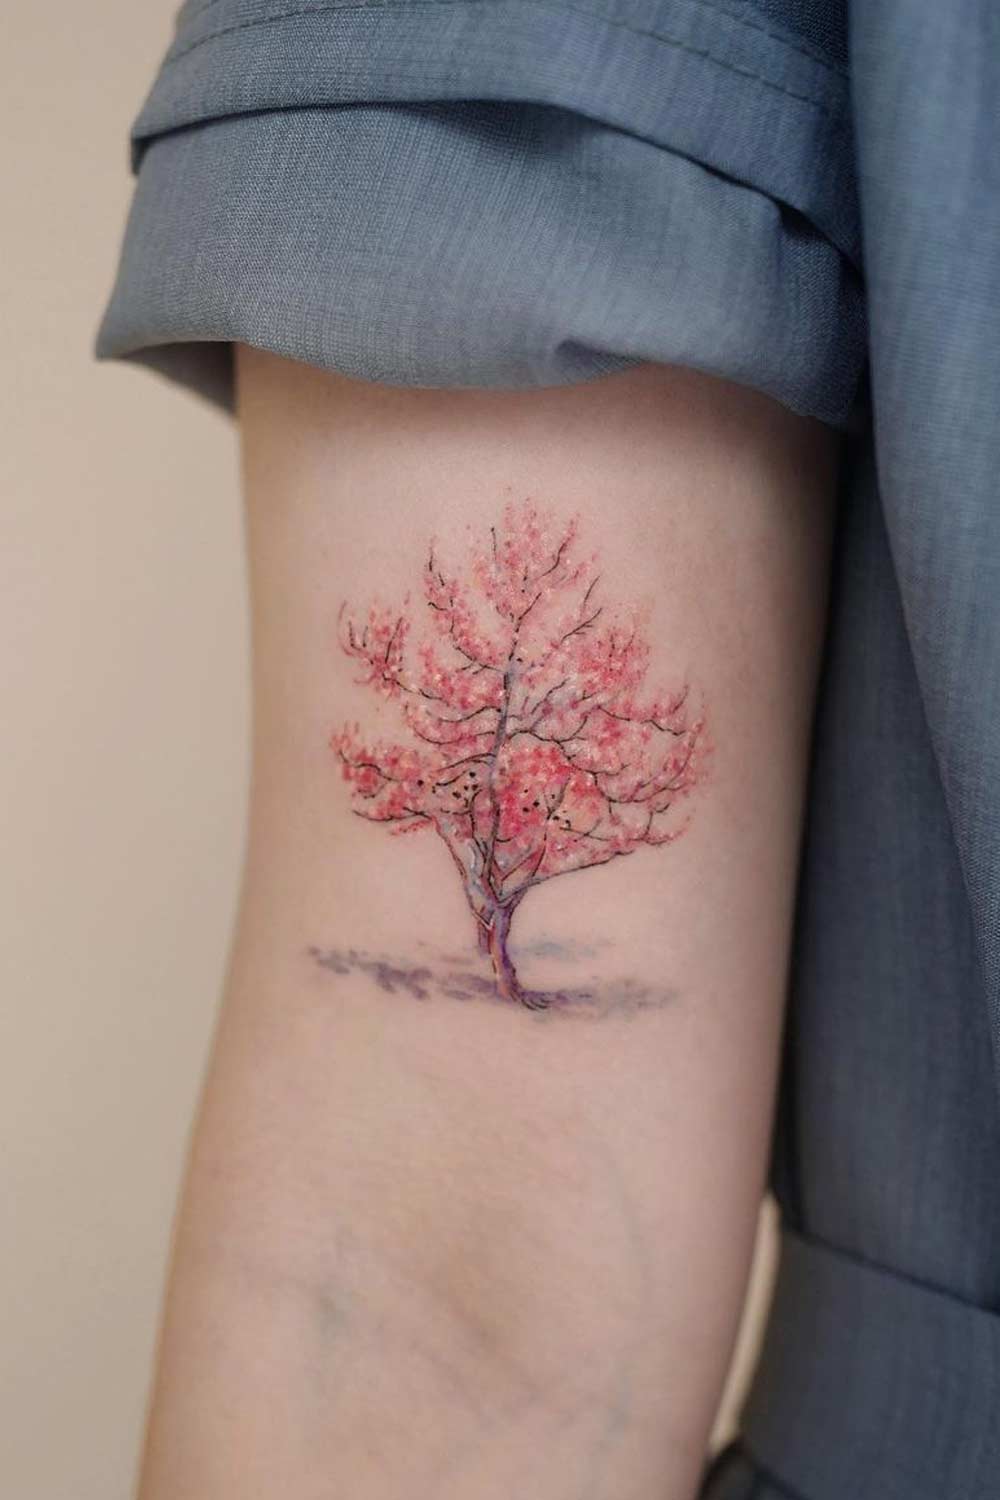 Dogwood Flower Tattoo Designs and Ideas  TatRing